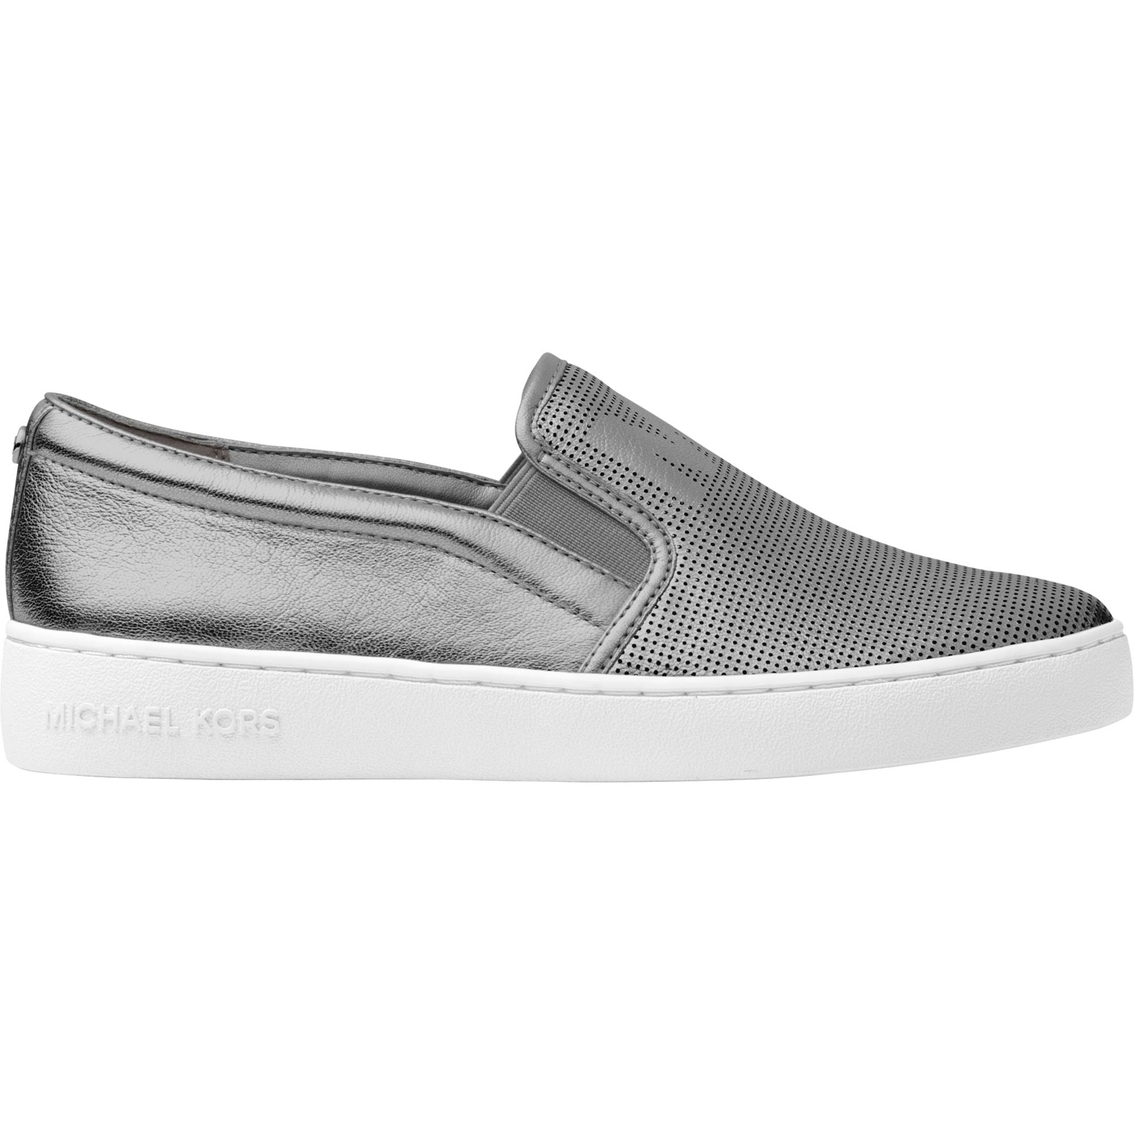 Michael Kors Keaton Slip on Sneakers - Image 2 of 3